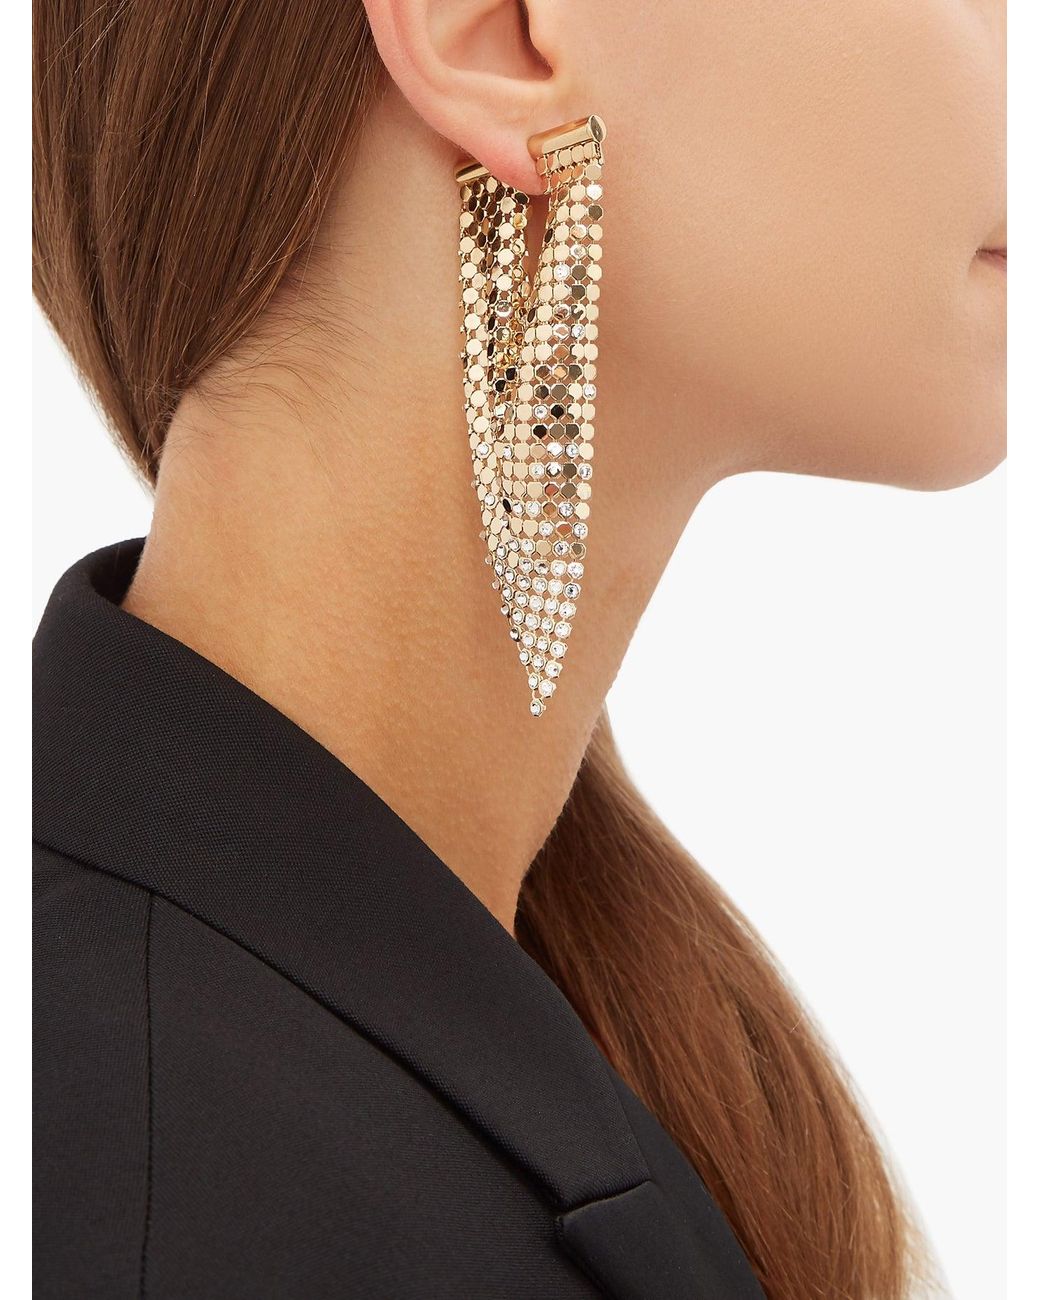 Jewellery Earrings Chandelier Earrings Paco Rabanne gold /crystal earrings 